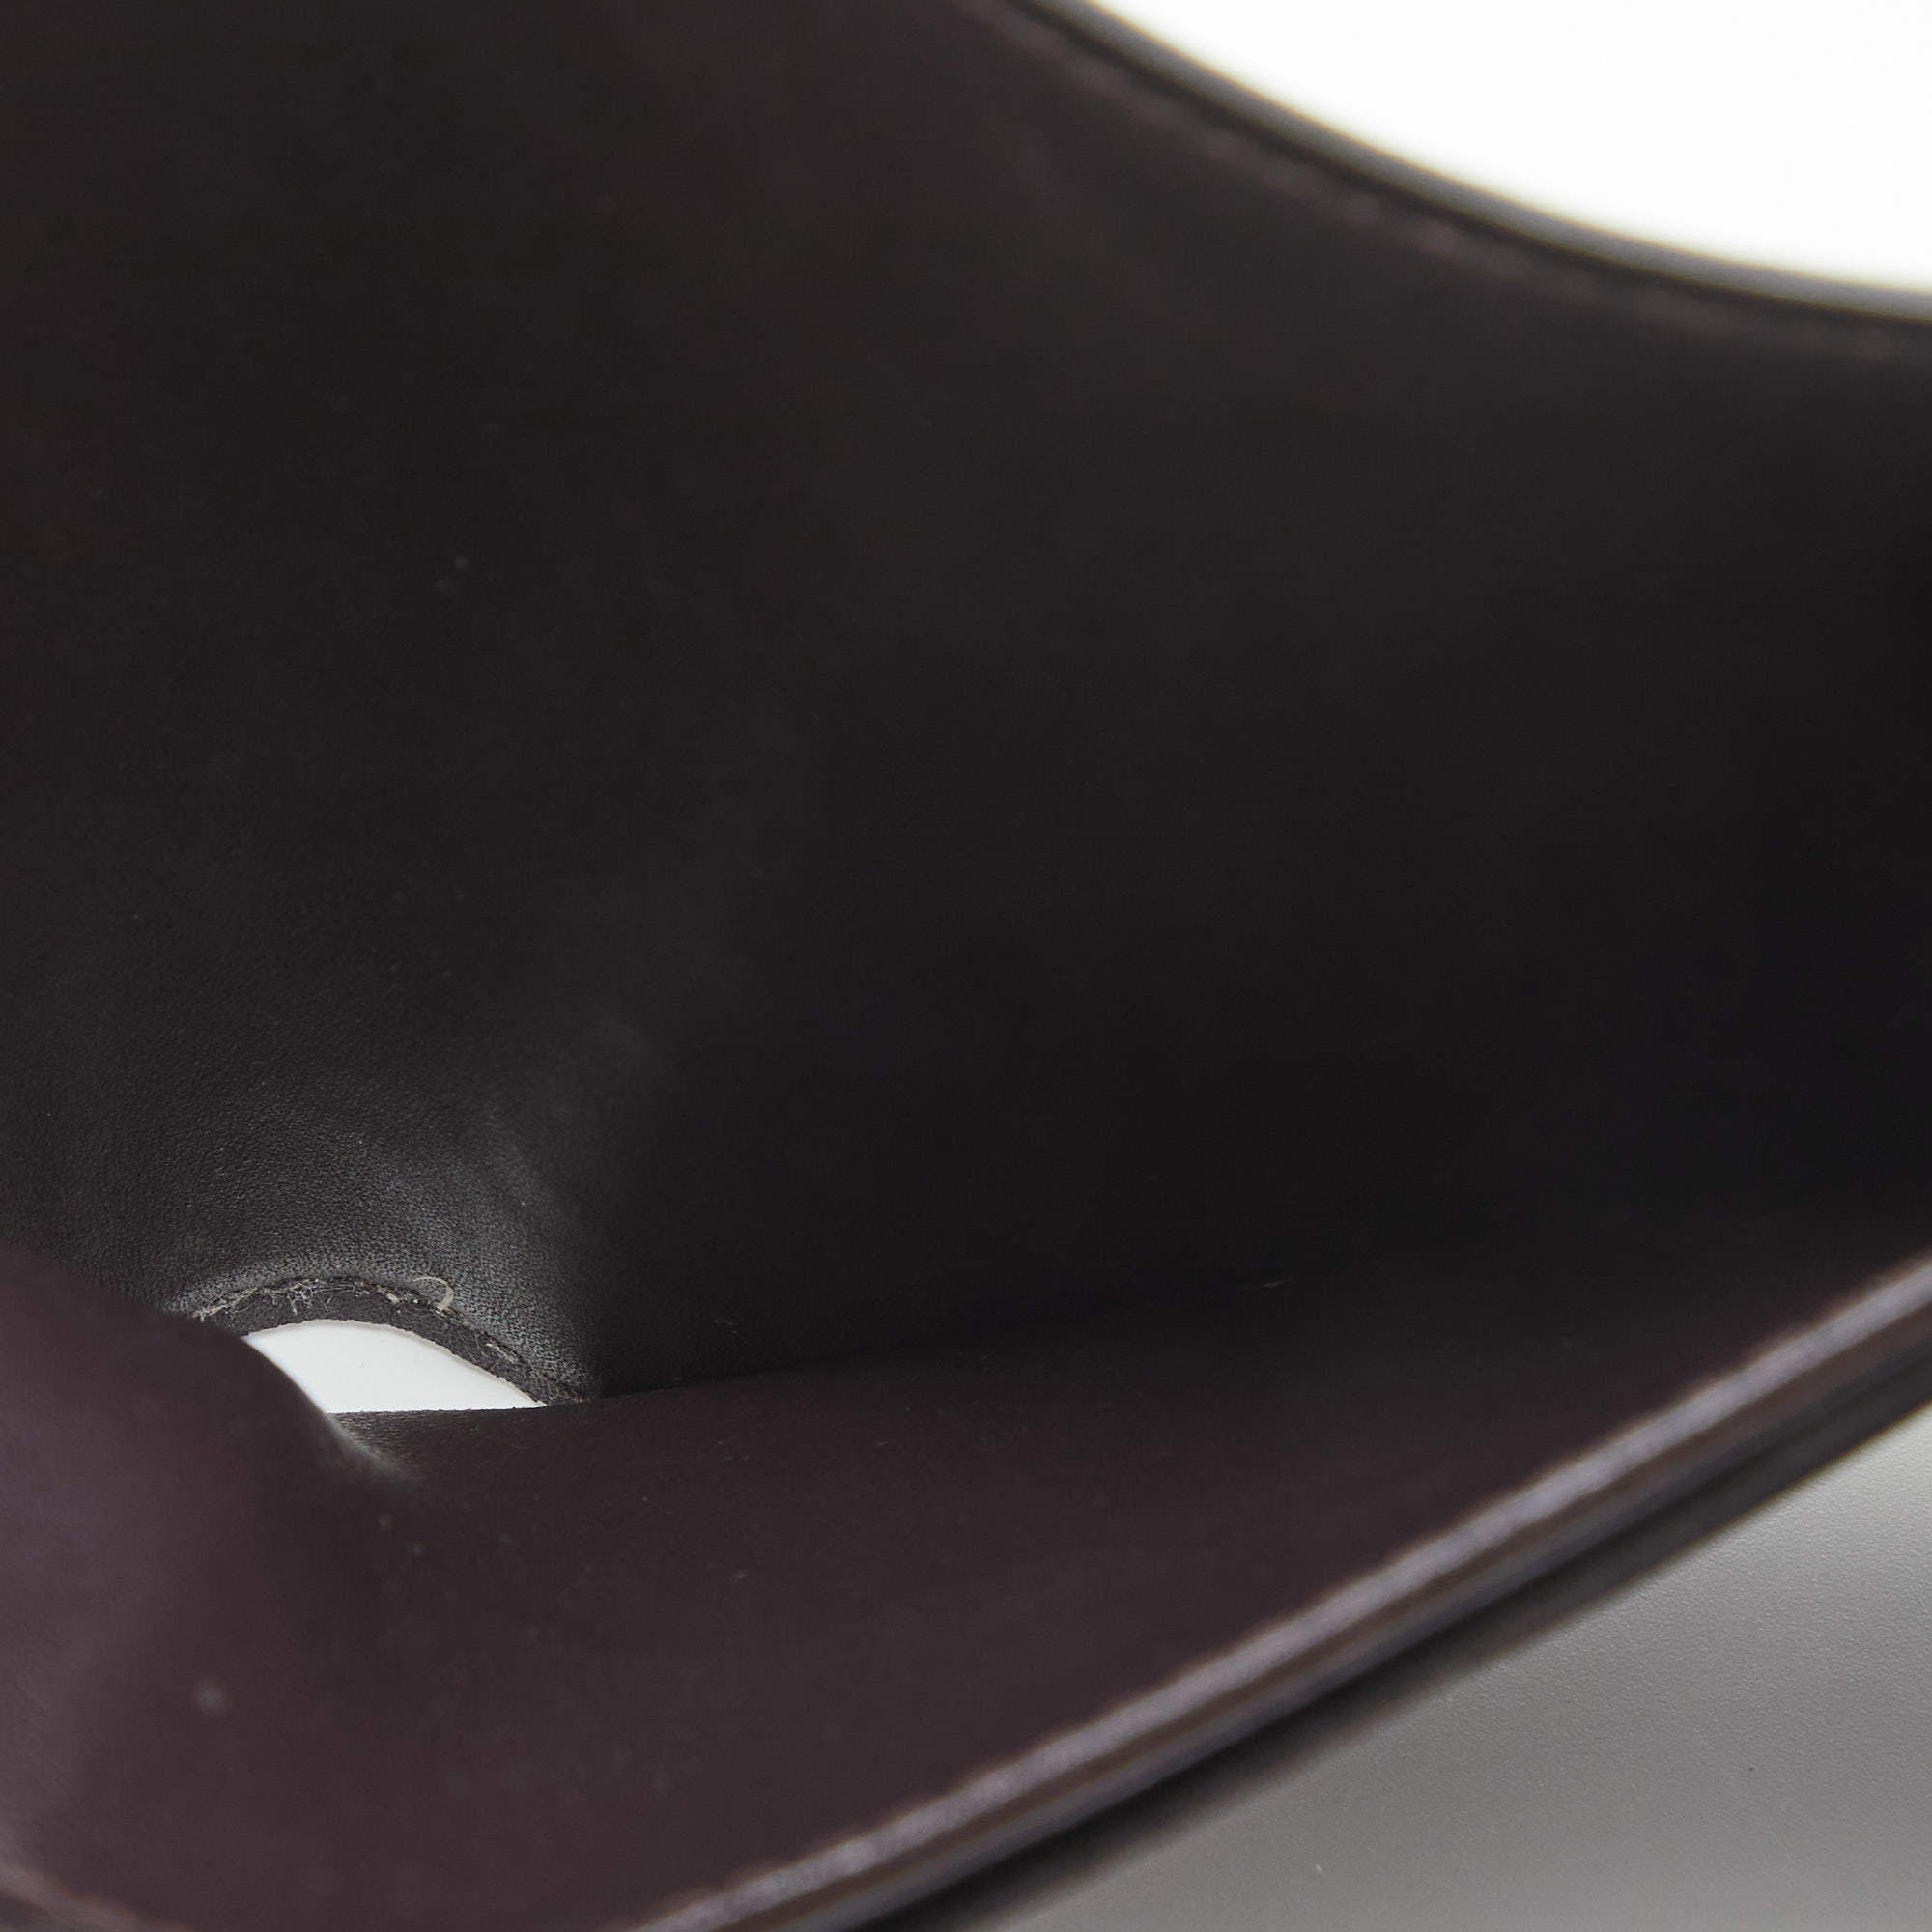 Victorine cloth wallet Louis Vuitton Beige in Cloth - 15373624